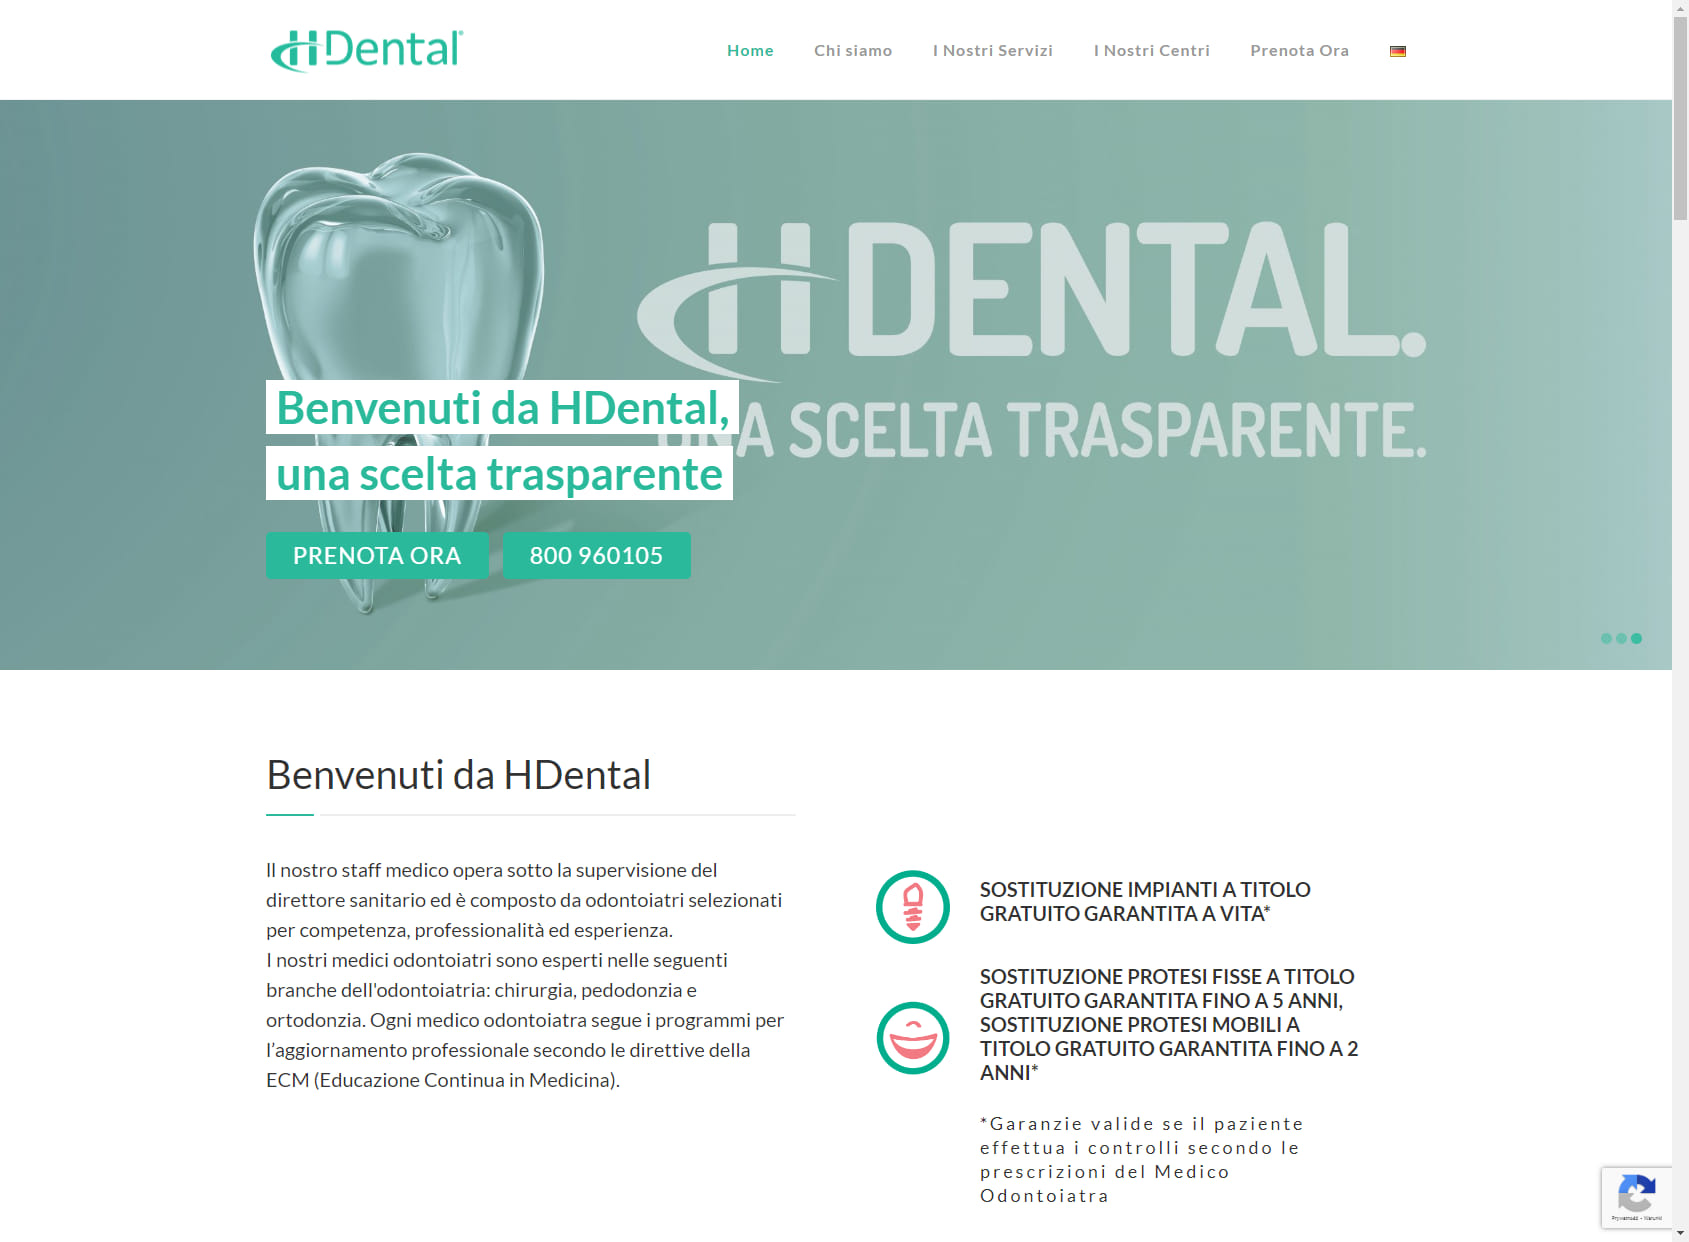 H-Dental